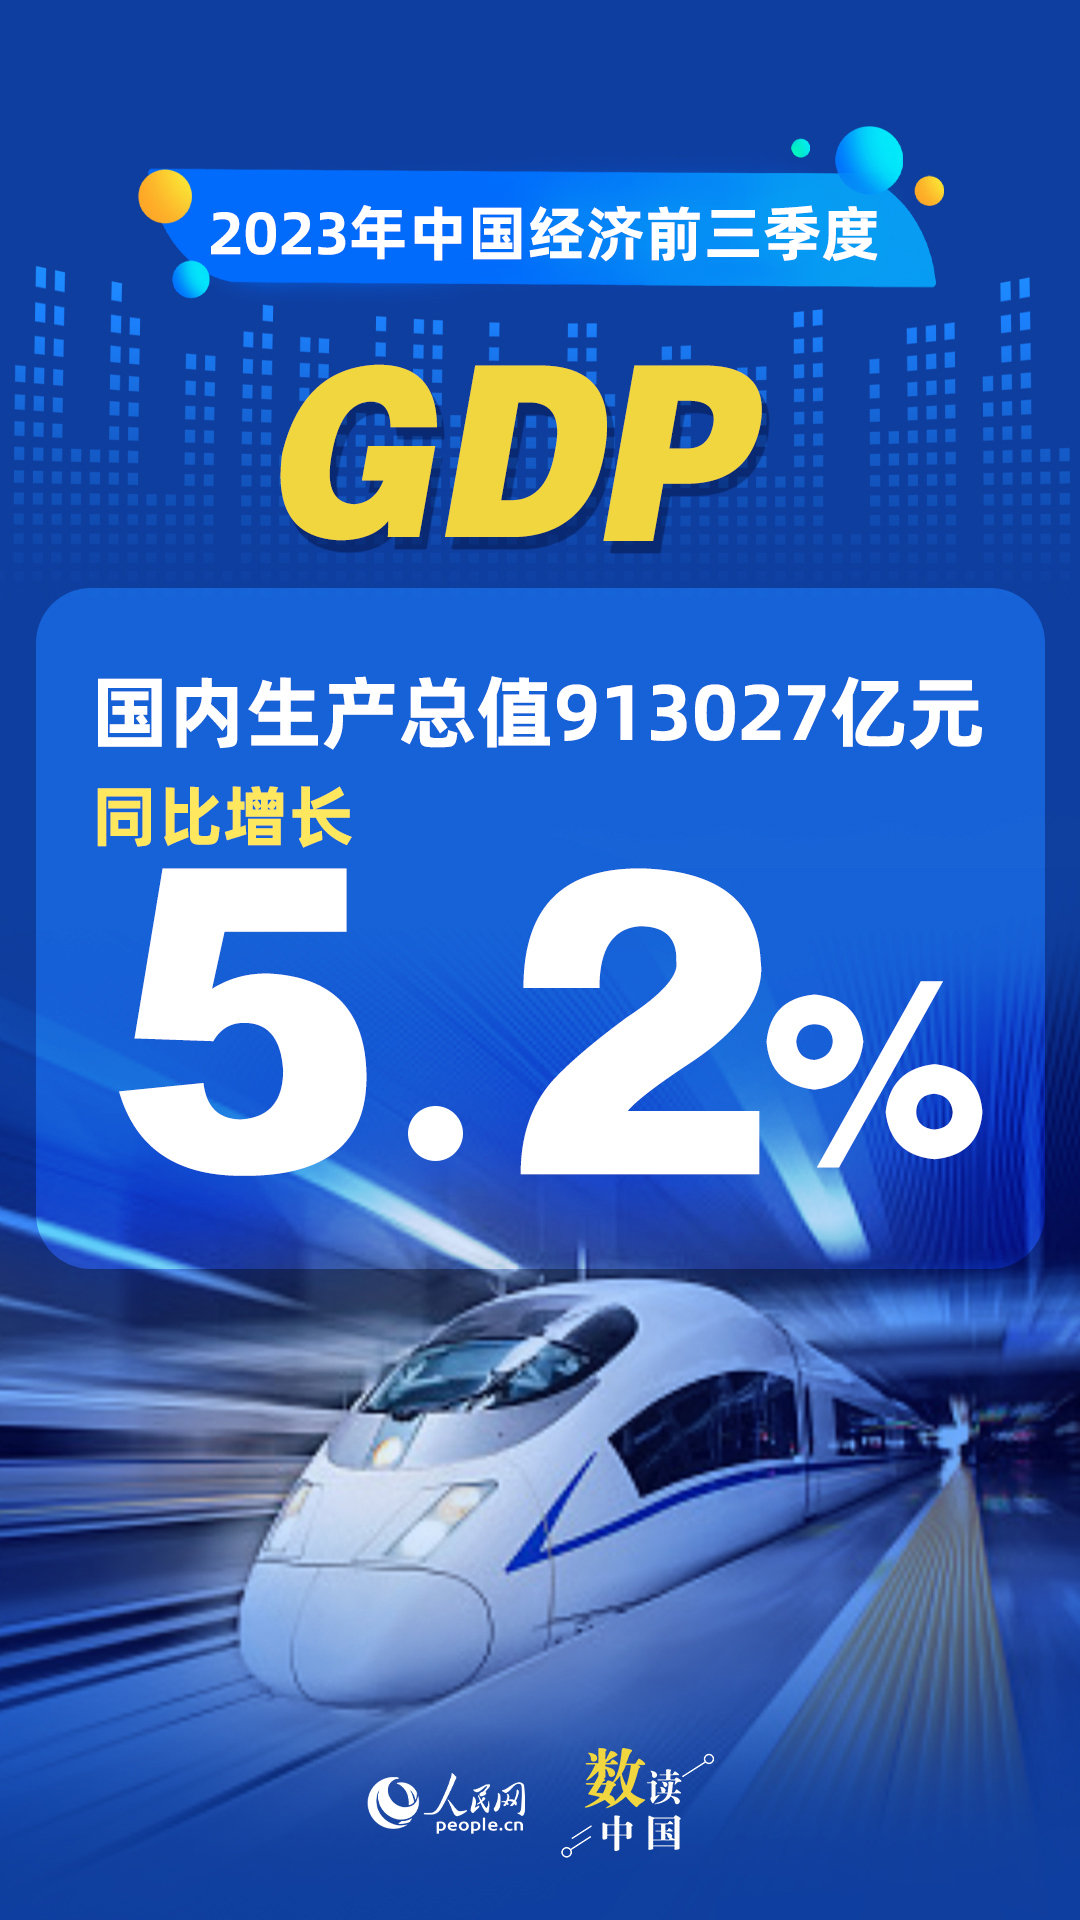 万向：数读中国 | 前三季度国民经济持续恢复向好 积极因素累积增多